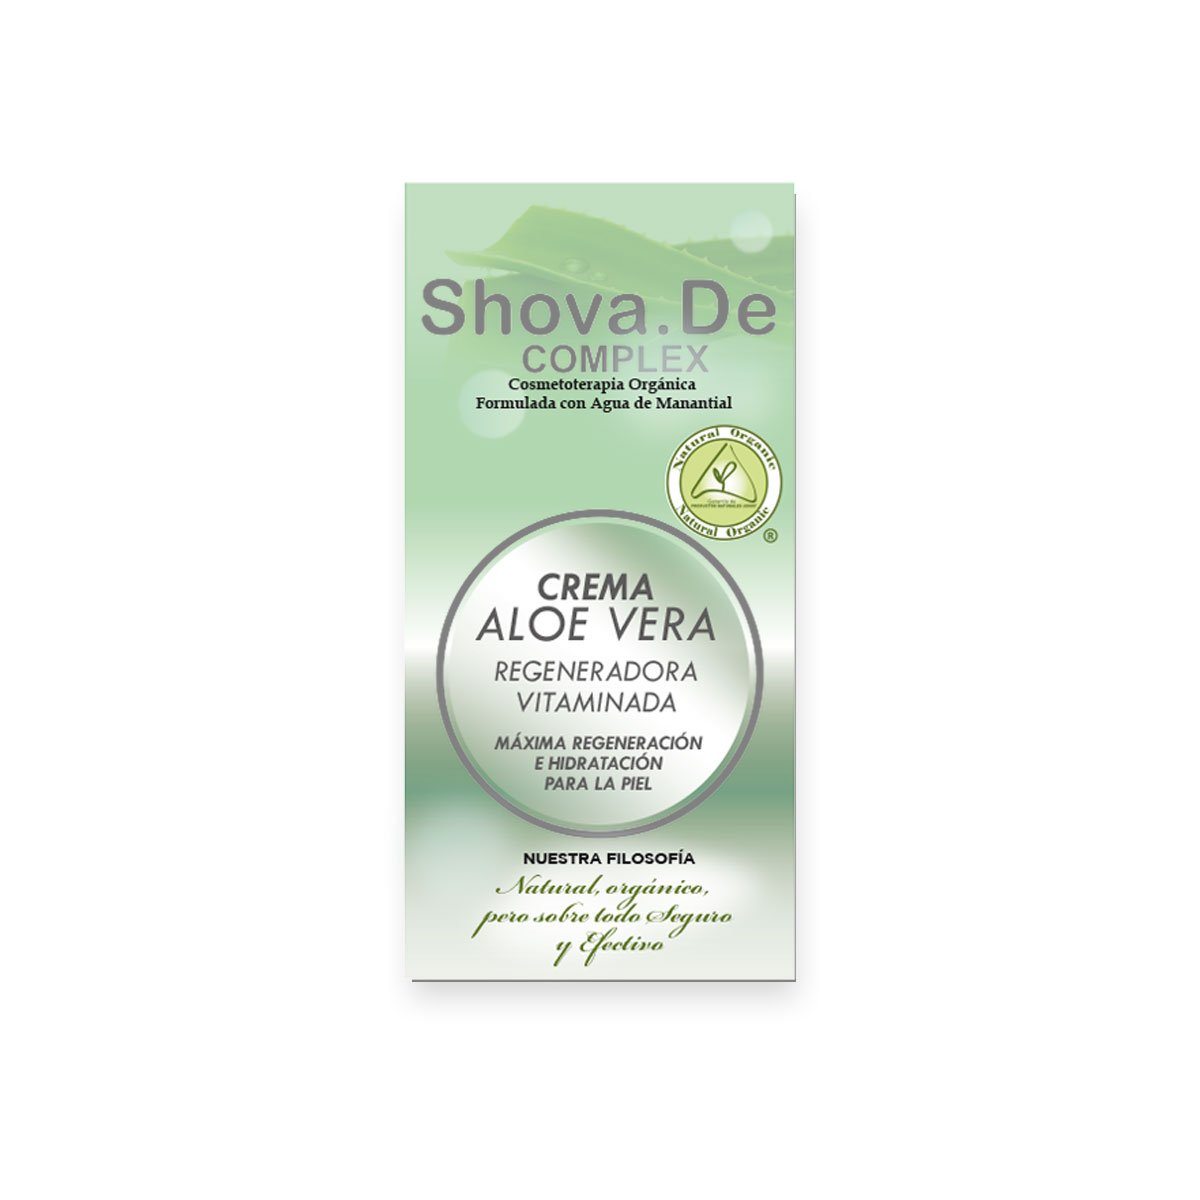 Crema de Aloe Vera Complex | ShovaDe - Dietetica Ferrer